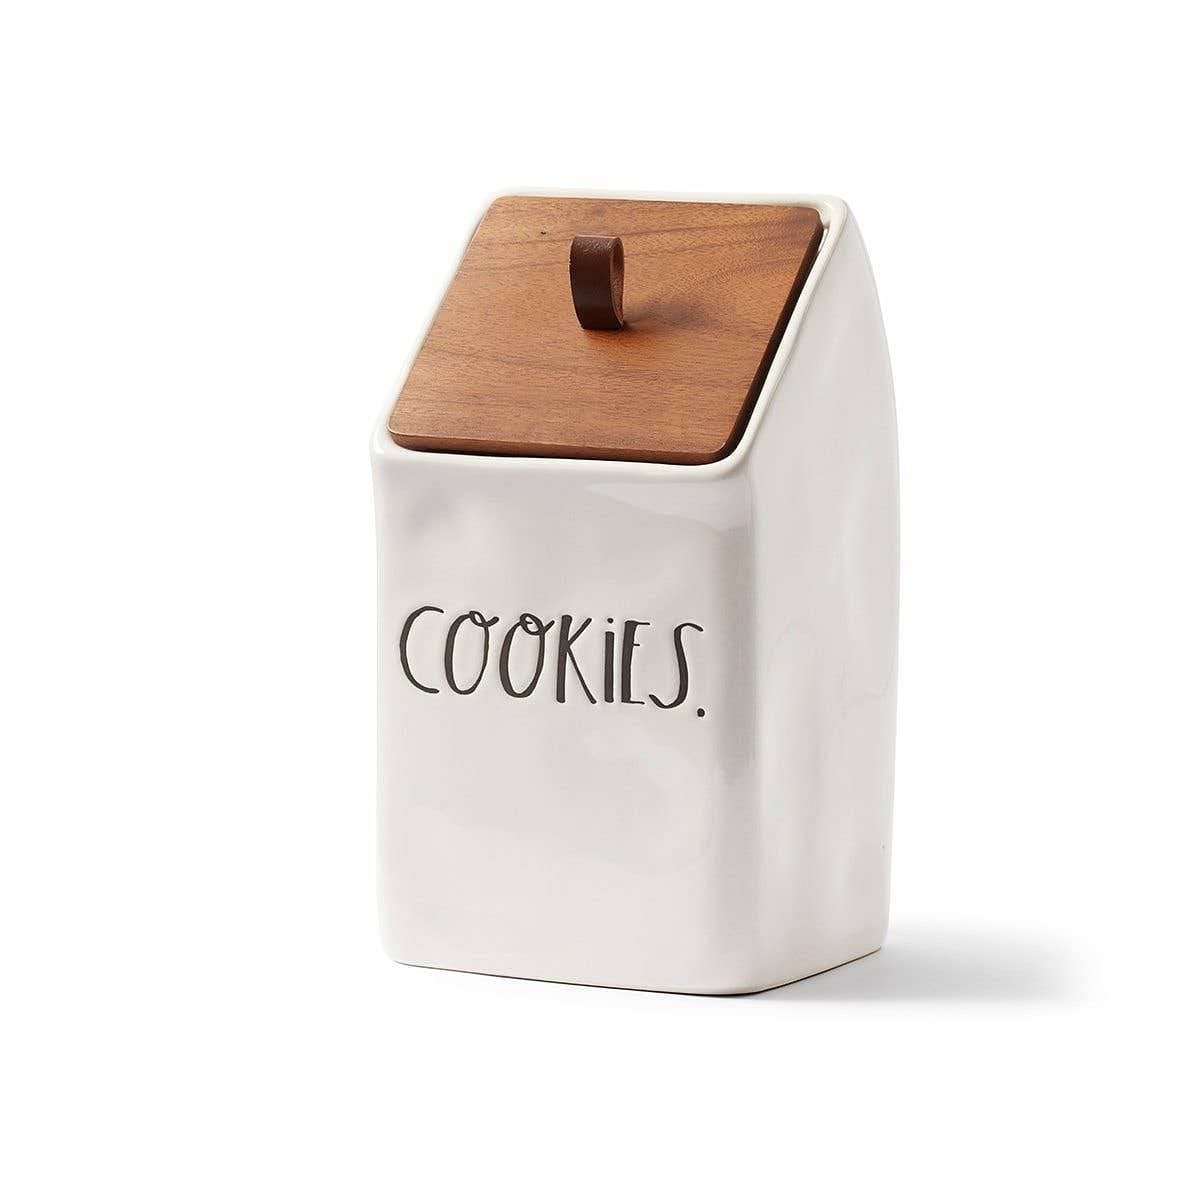 Stem Print Cookie Jar with a Wood Lid